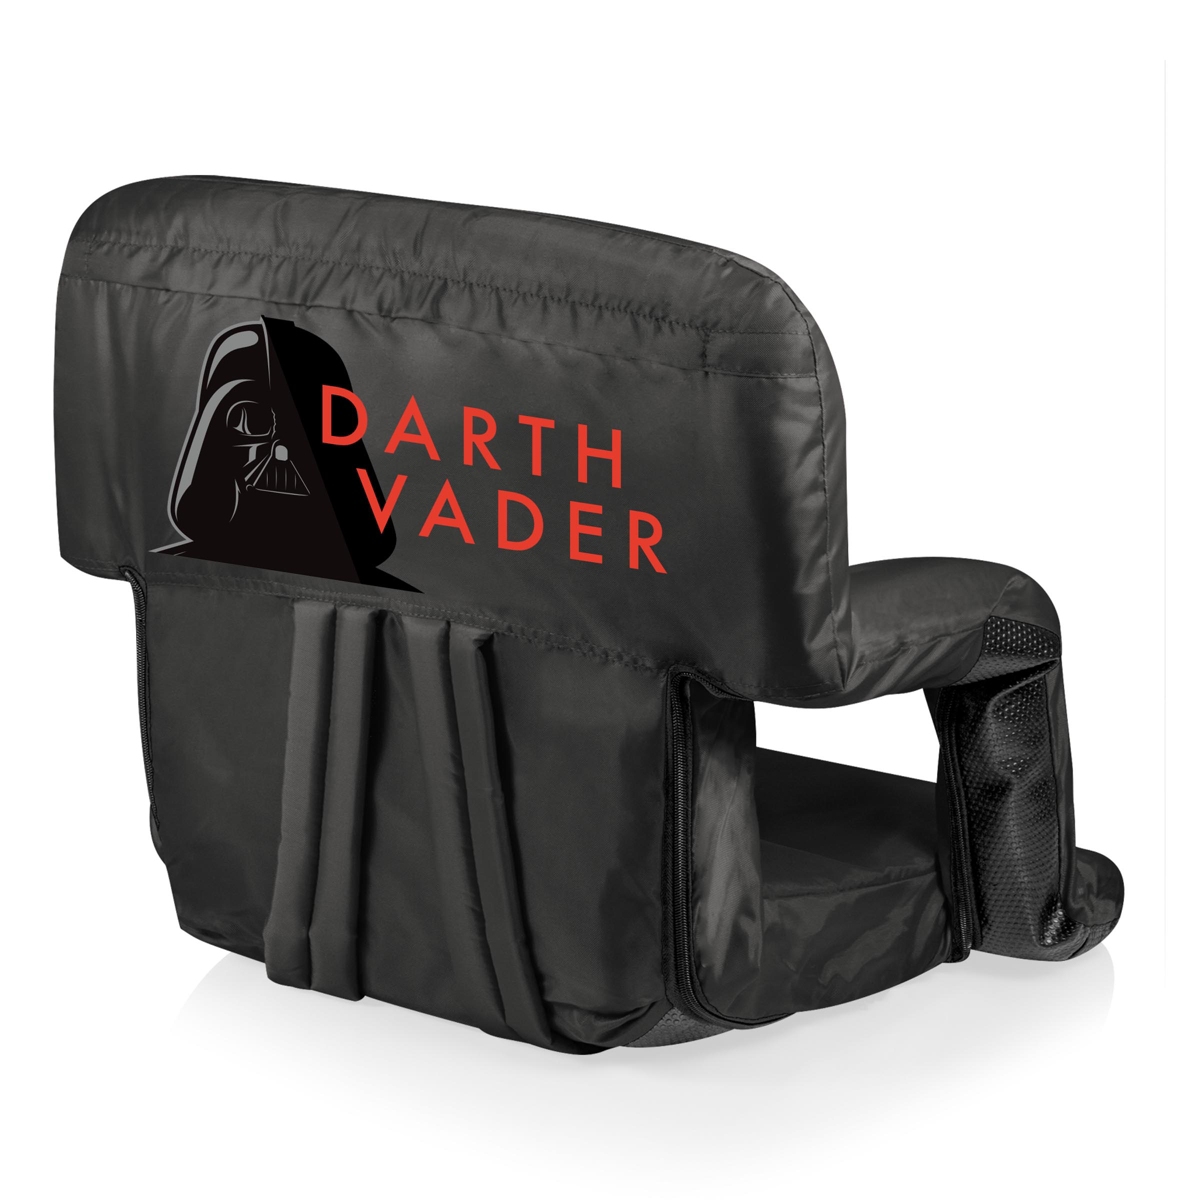 Oniva by Picnic Time Star Wars Darth Vader Ventura Portable Reclining Stadium Seat - Black